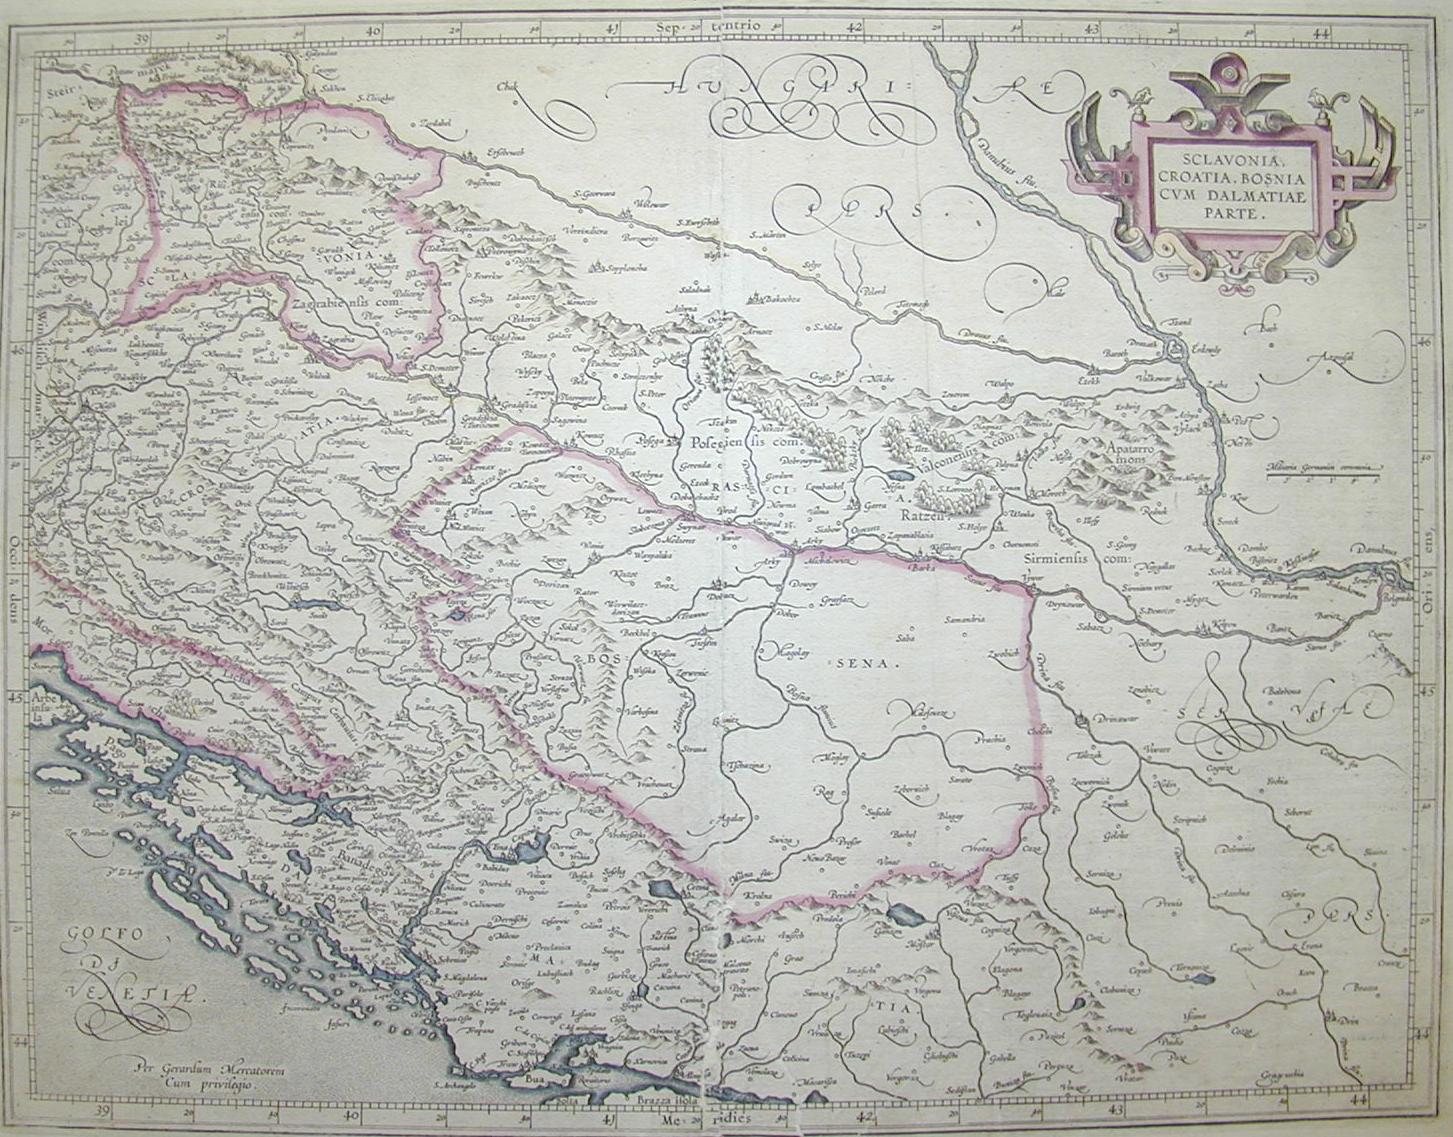 Slavonia, Croazia, Bosnia 1580